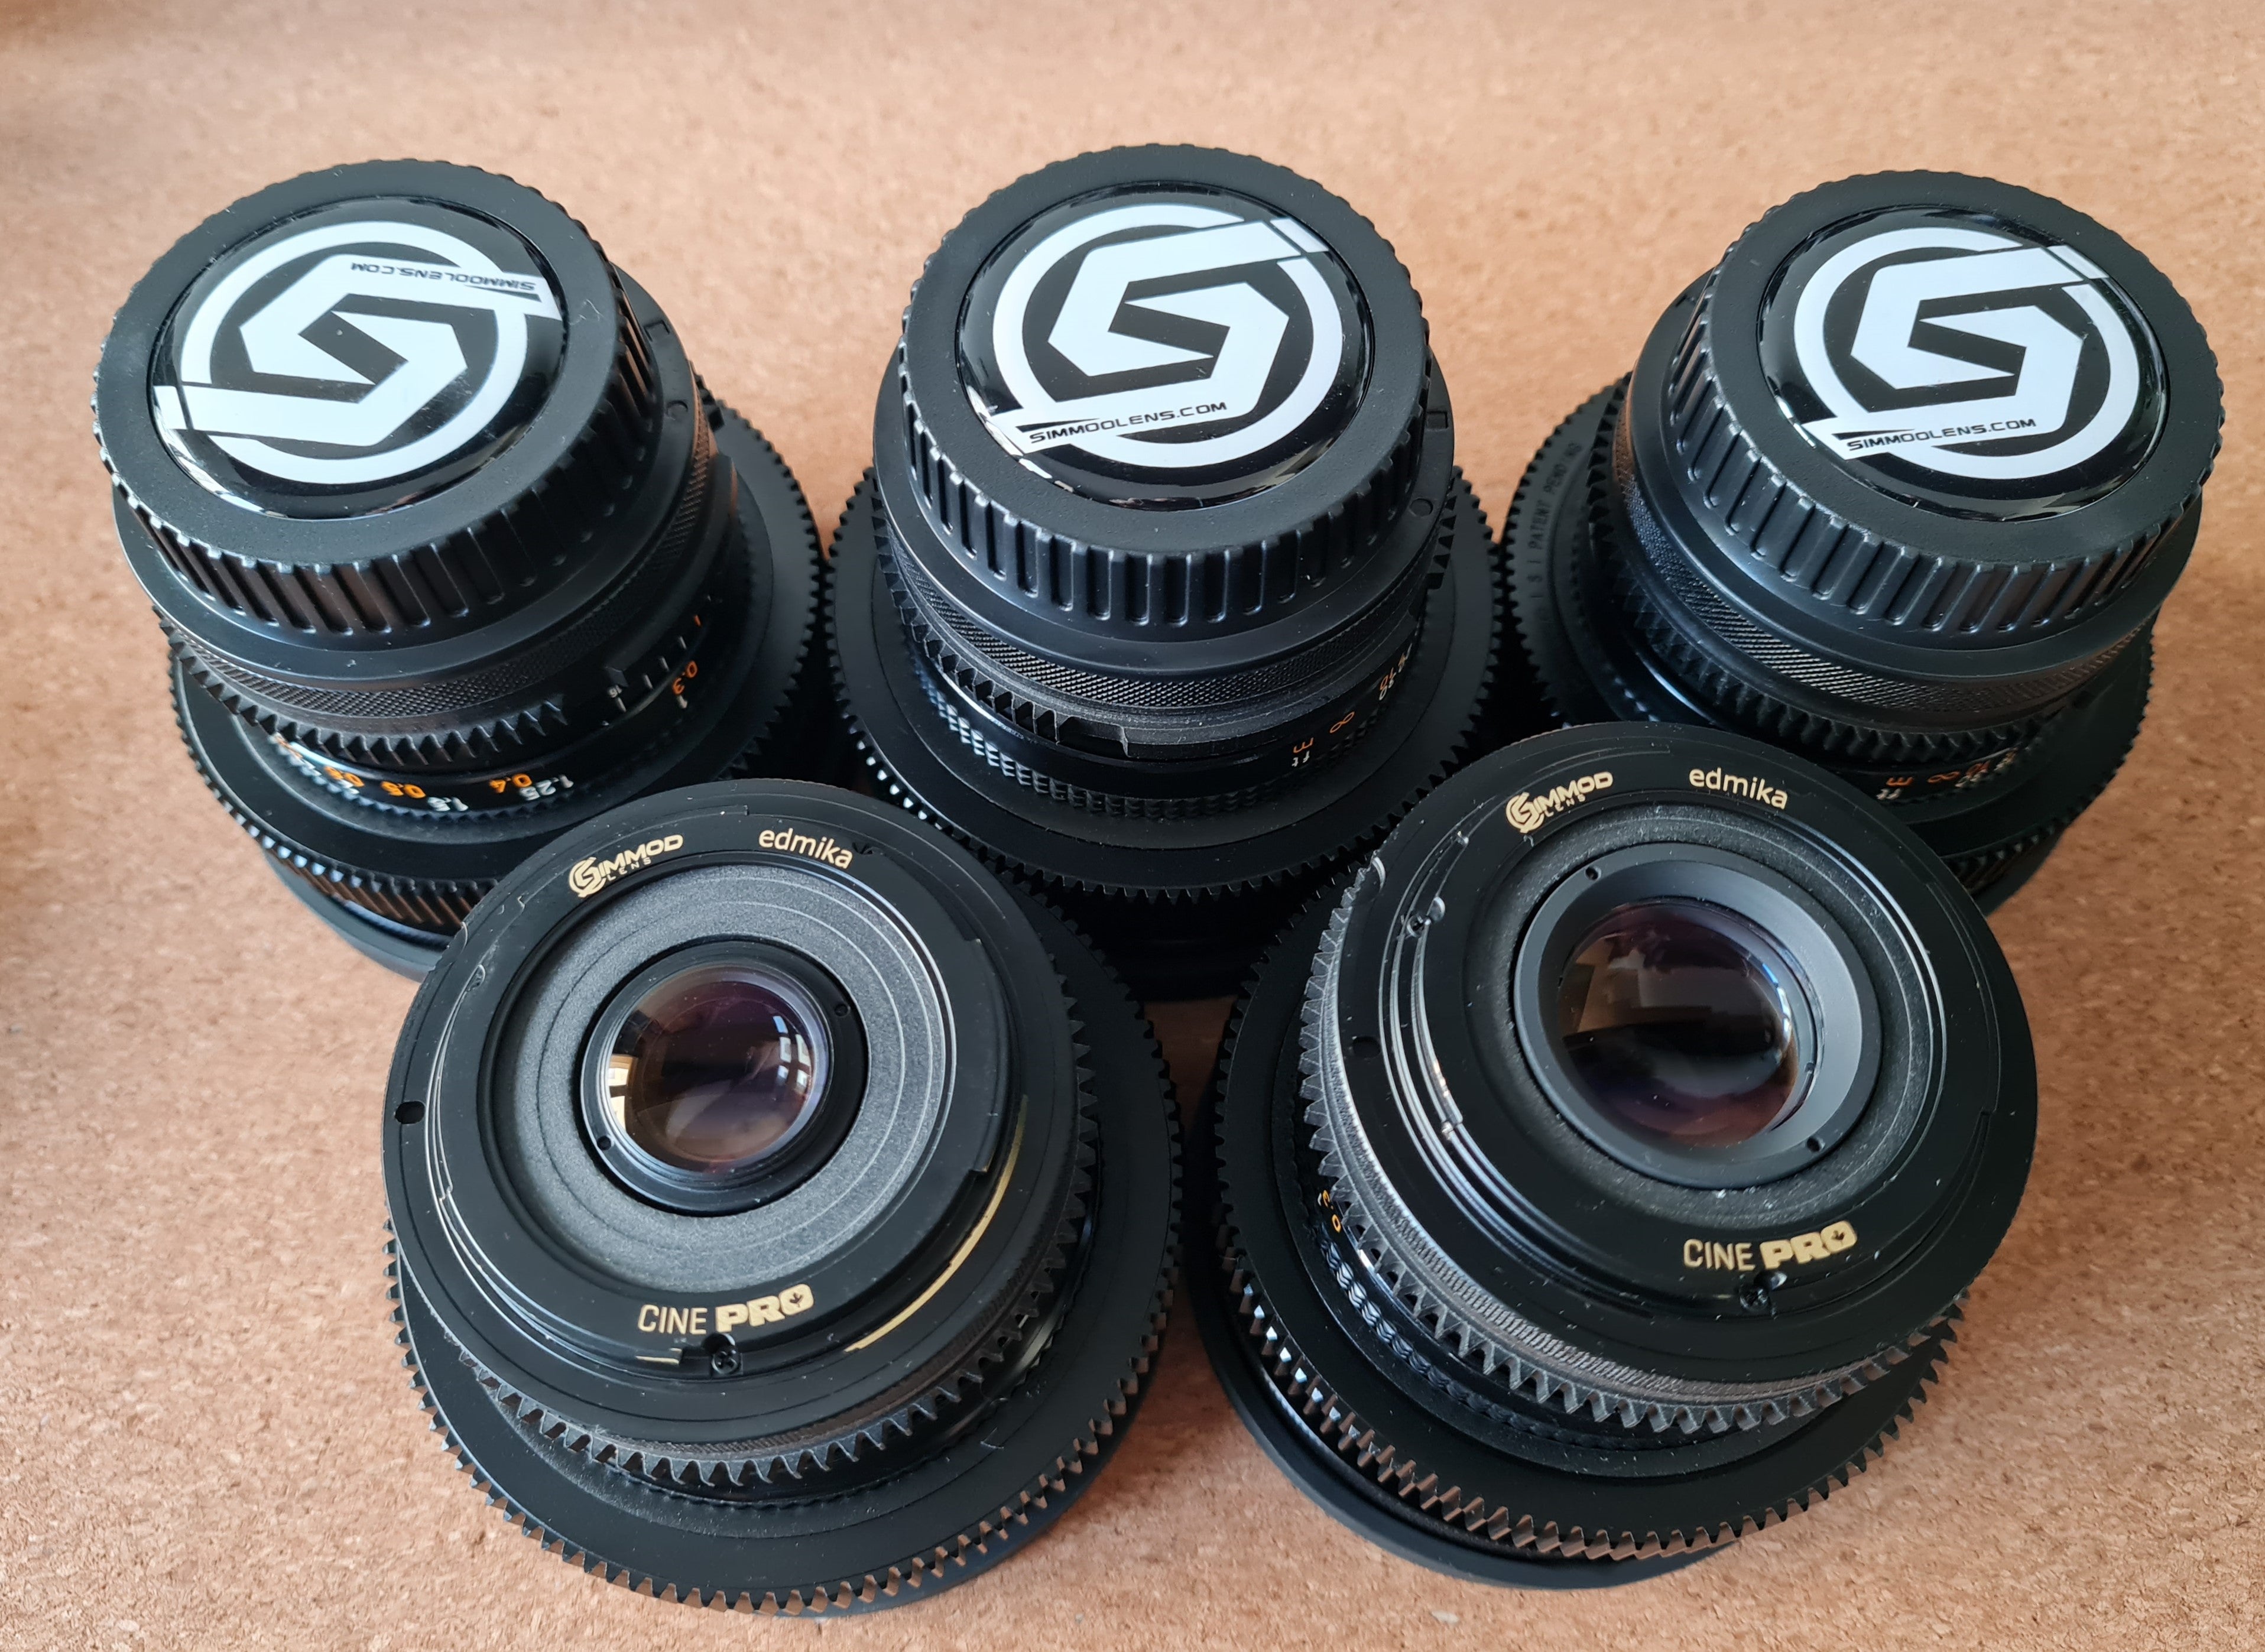 SIMMOD CINE GEAR KIT for CANON FD lenses